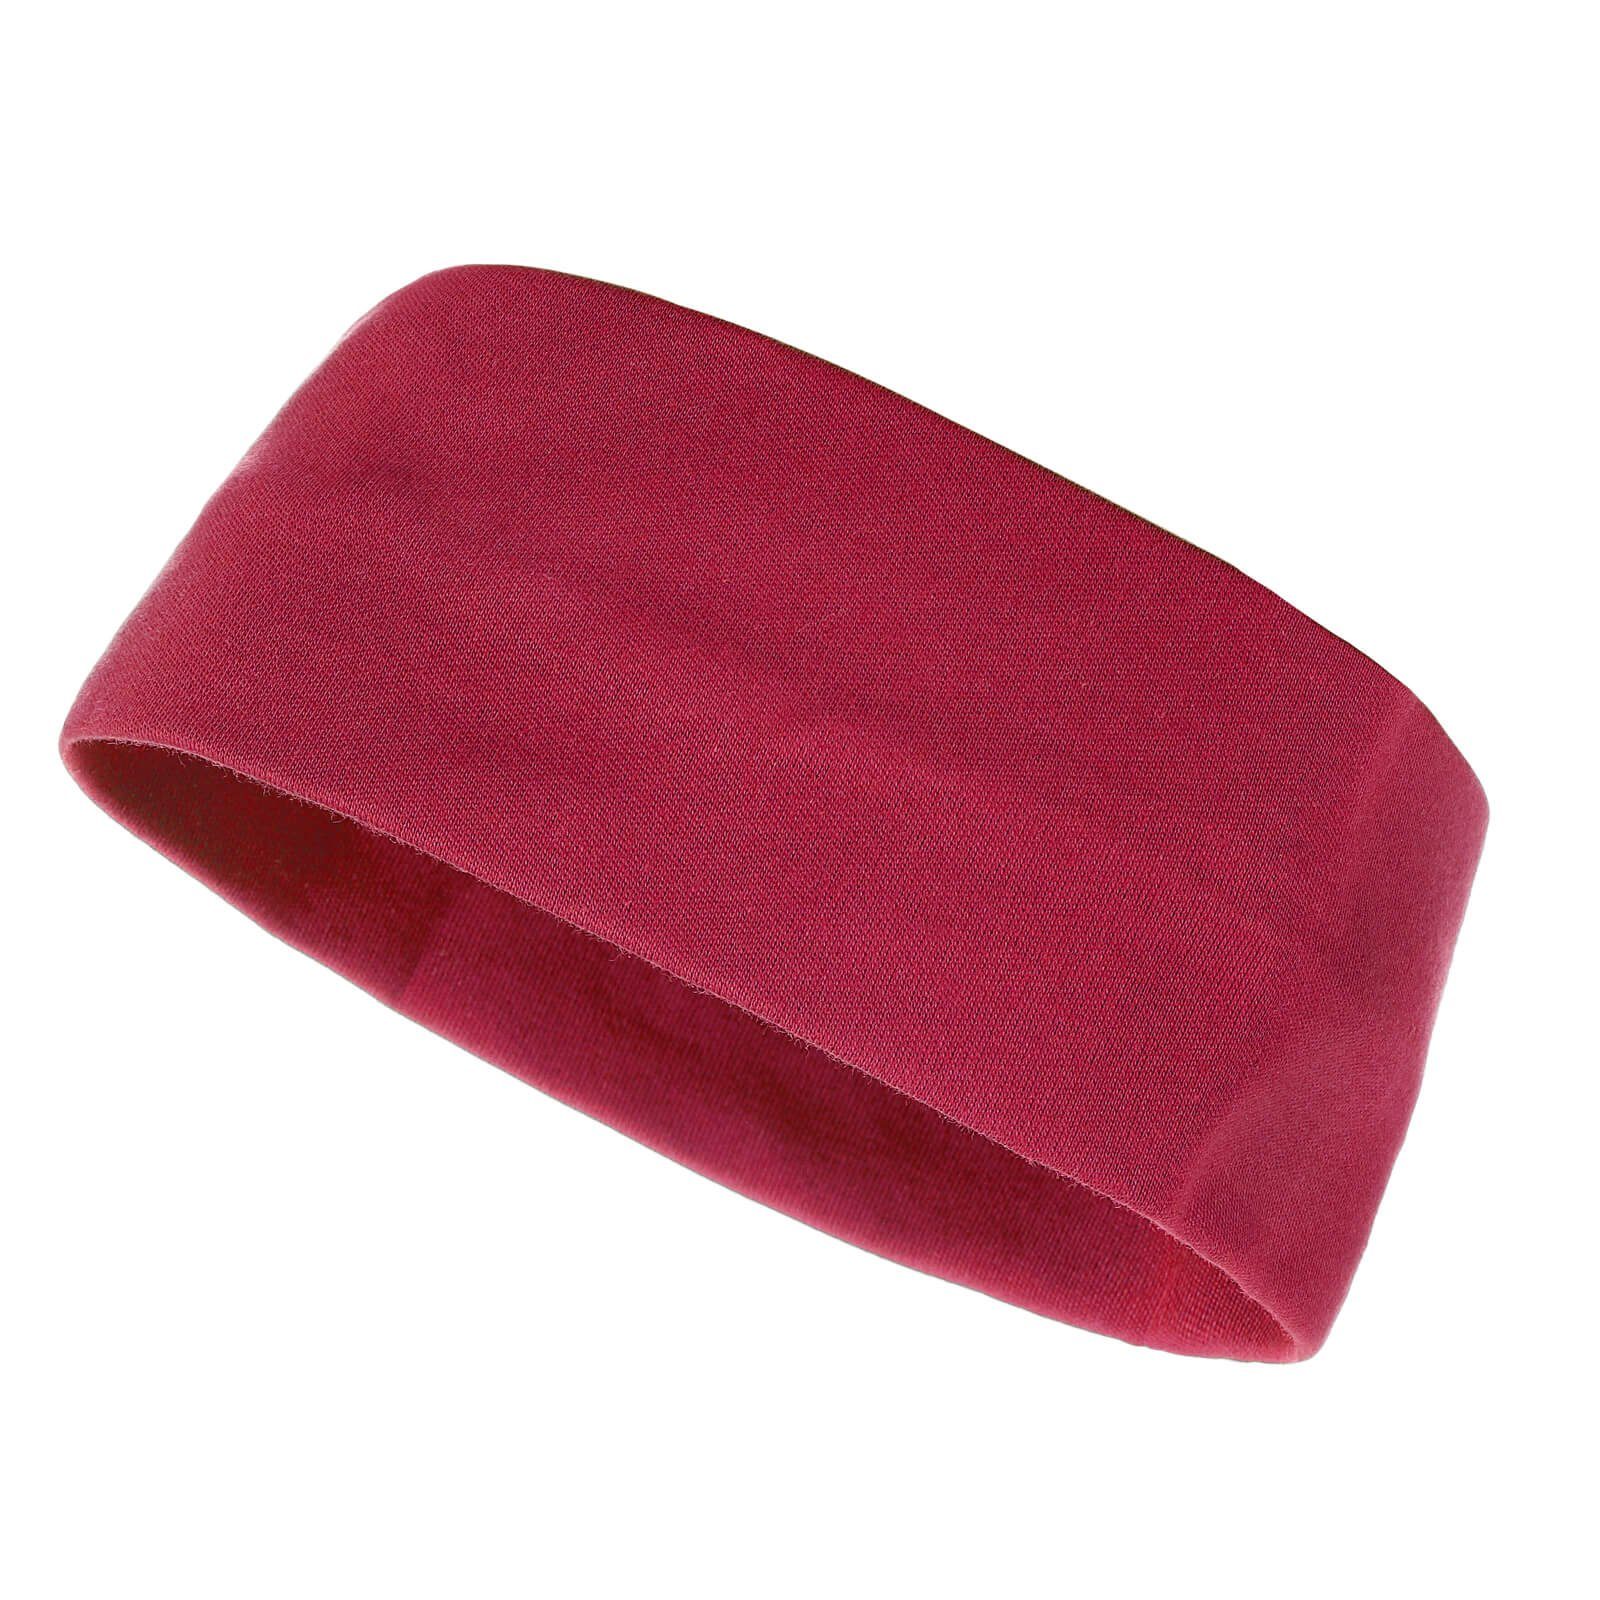 (20) Erwachsene rot Kopfband Stirnband Kinder Unisex zweilagig modAS Maritim und Baumwolle für